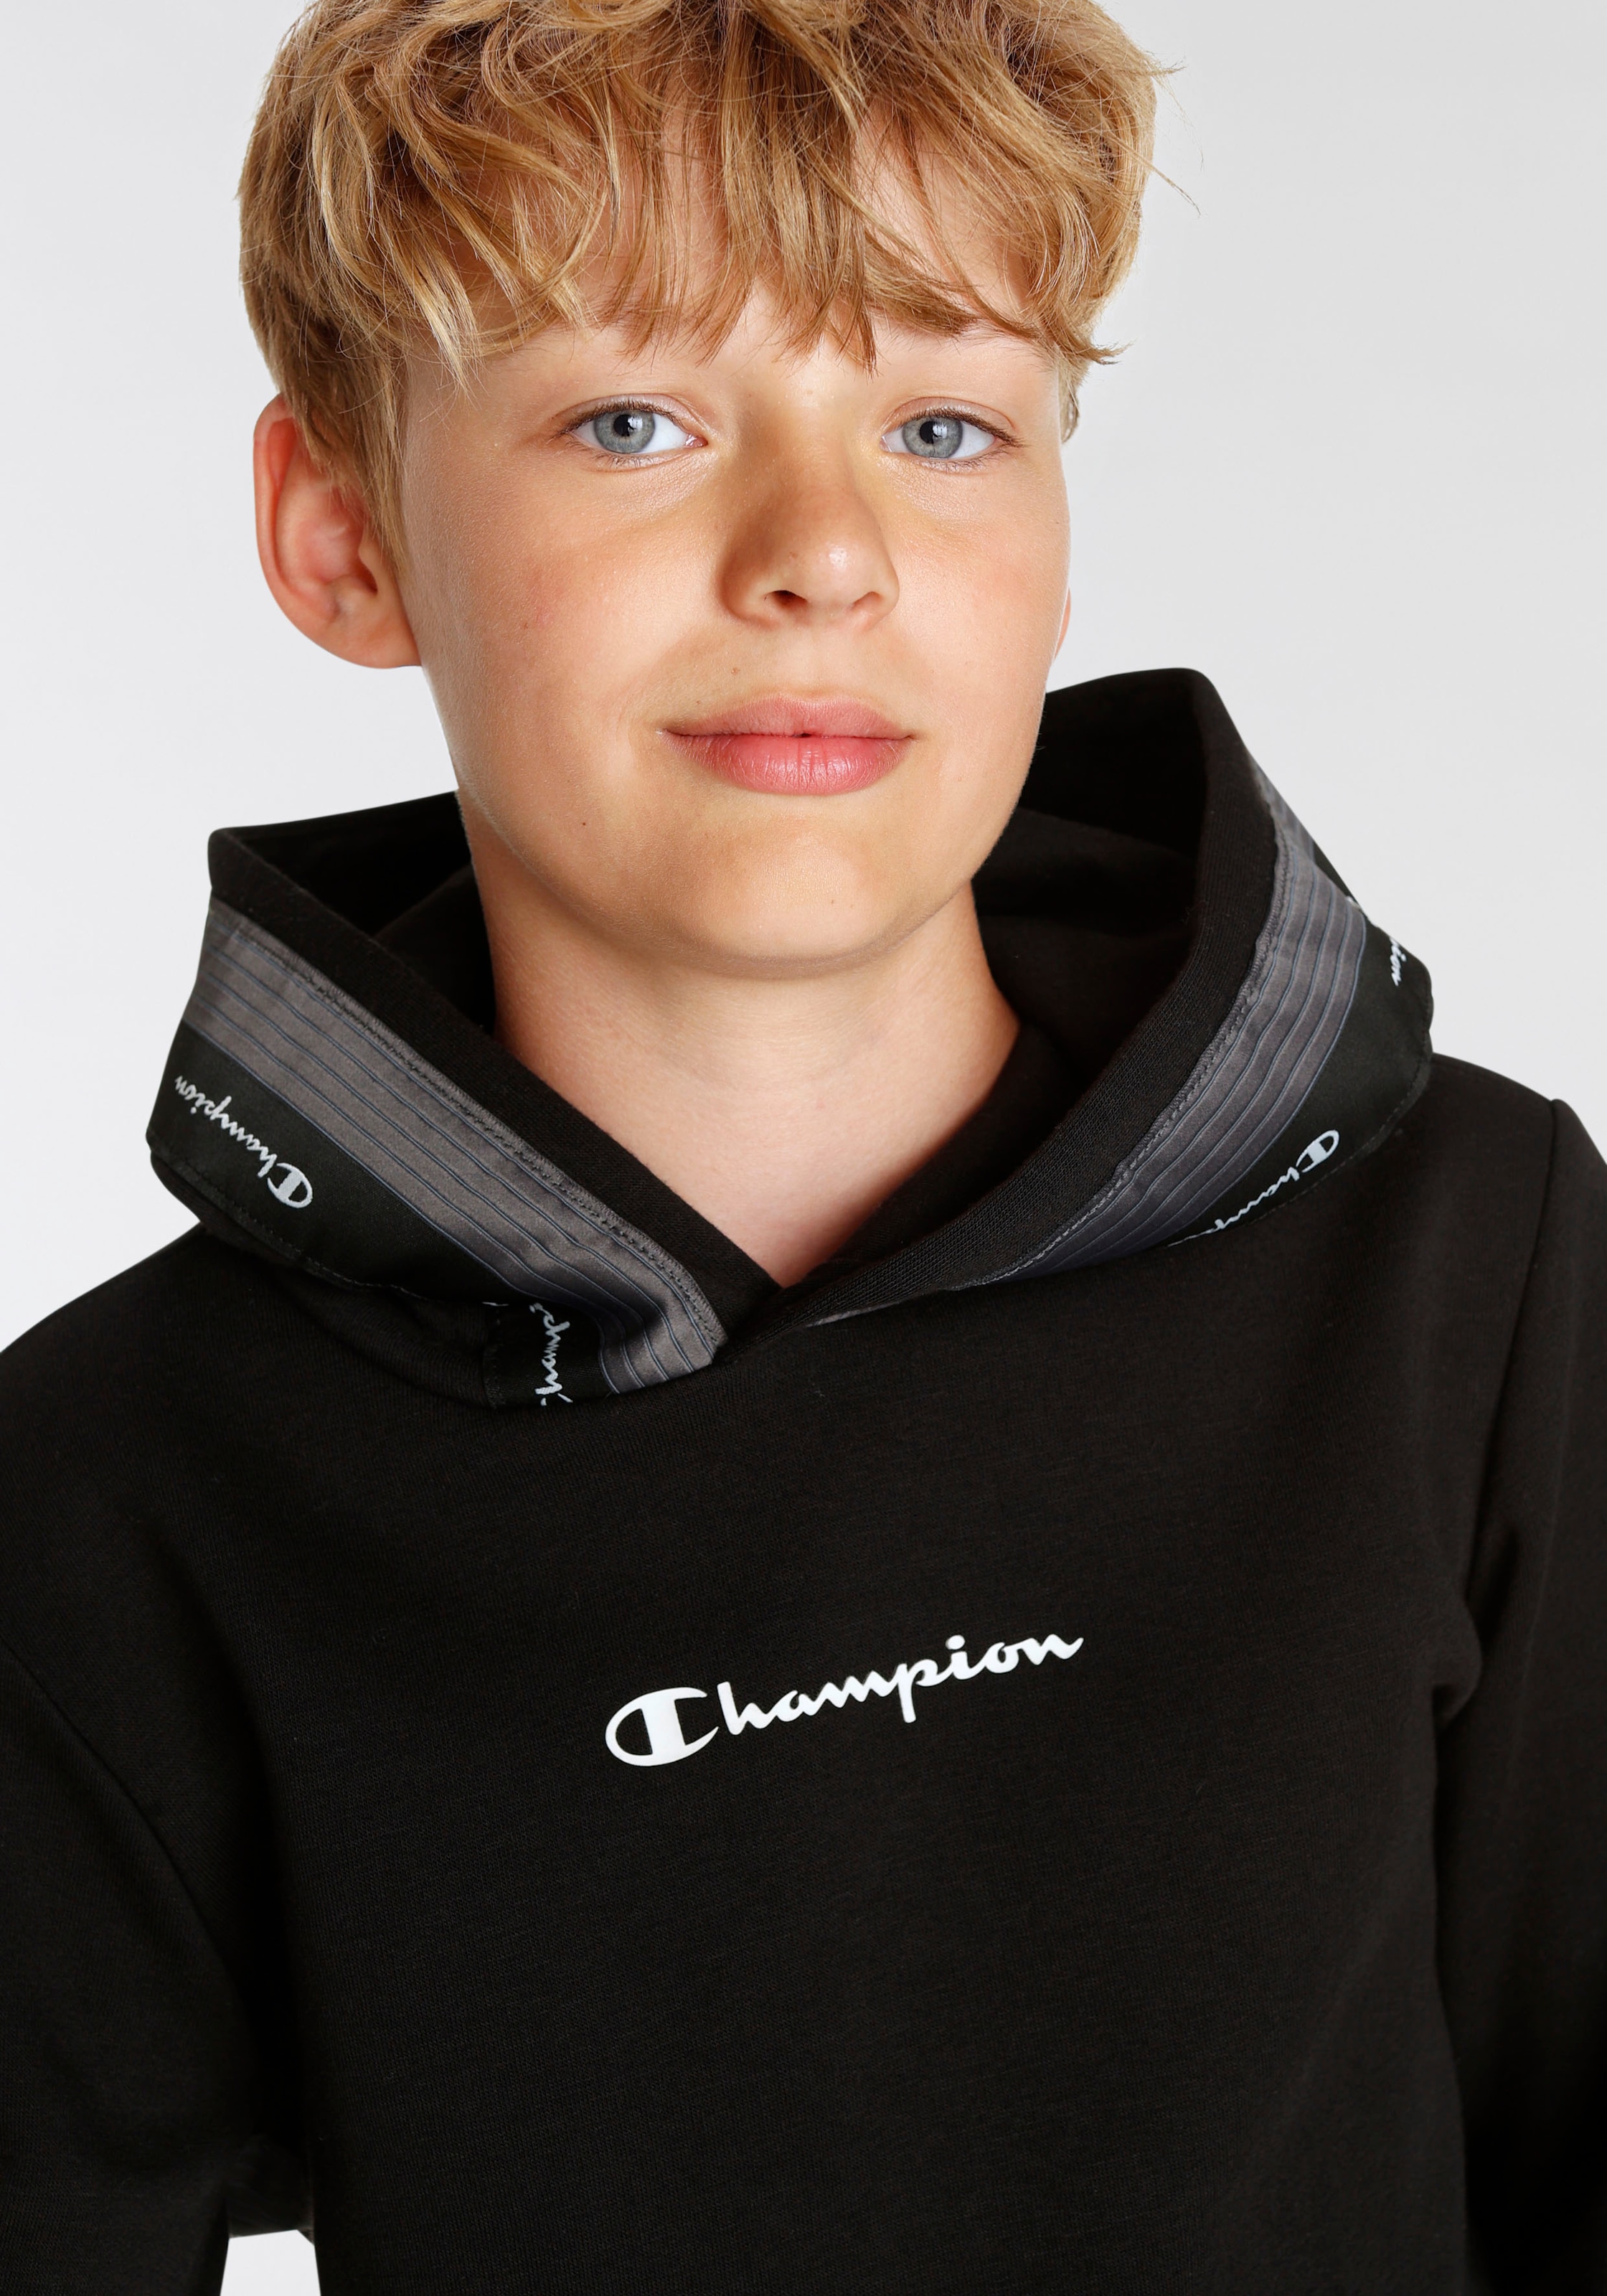 für Kapuzensweatshirt kaufen Hooded Champion online »Tape - Kinder« Sweatshirt